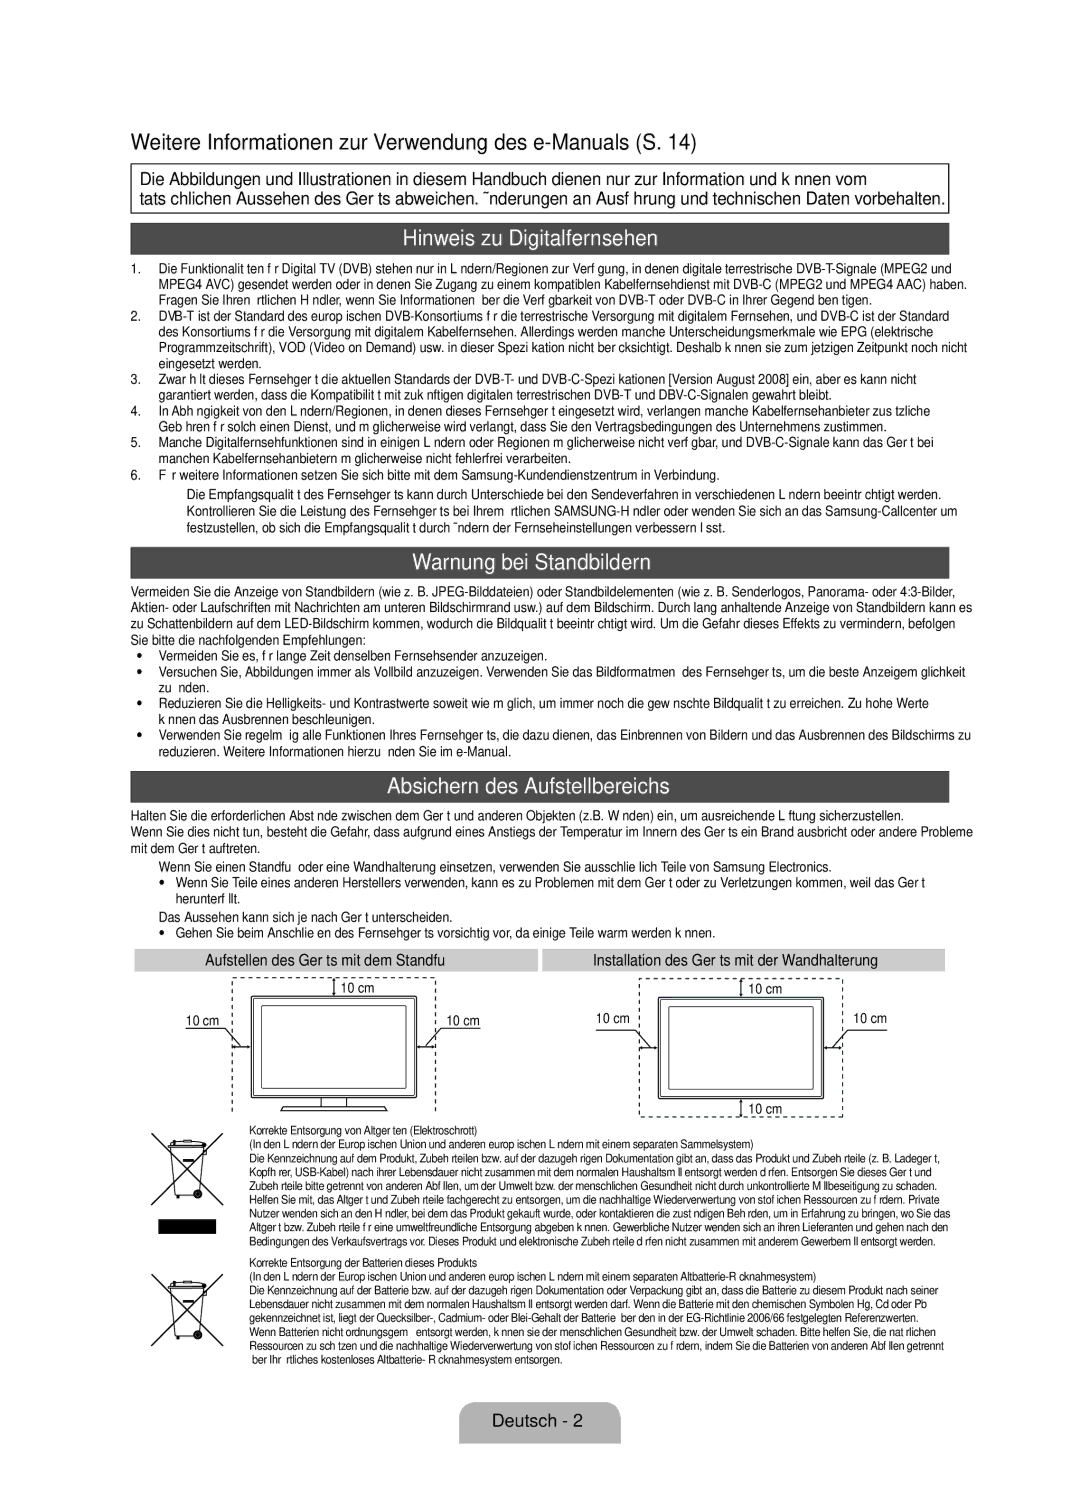 Samsung UE40D7090LSXZG manual Hinweis zu Digitalfernsehen, Warnung bei Standbildern, Absichern des Aufstellbereichs 